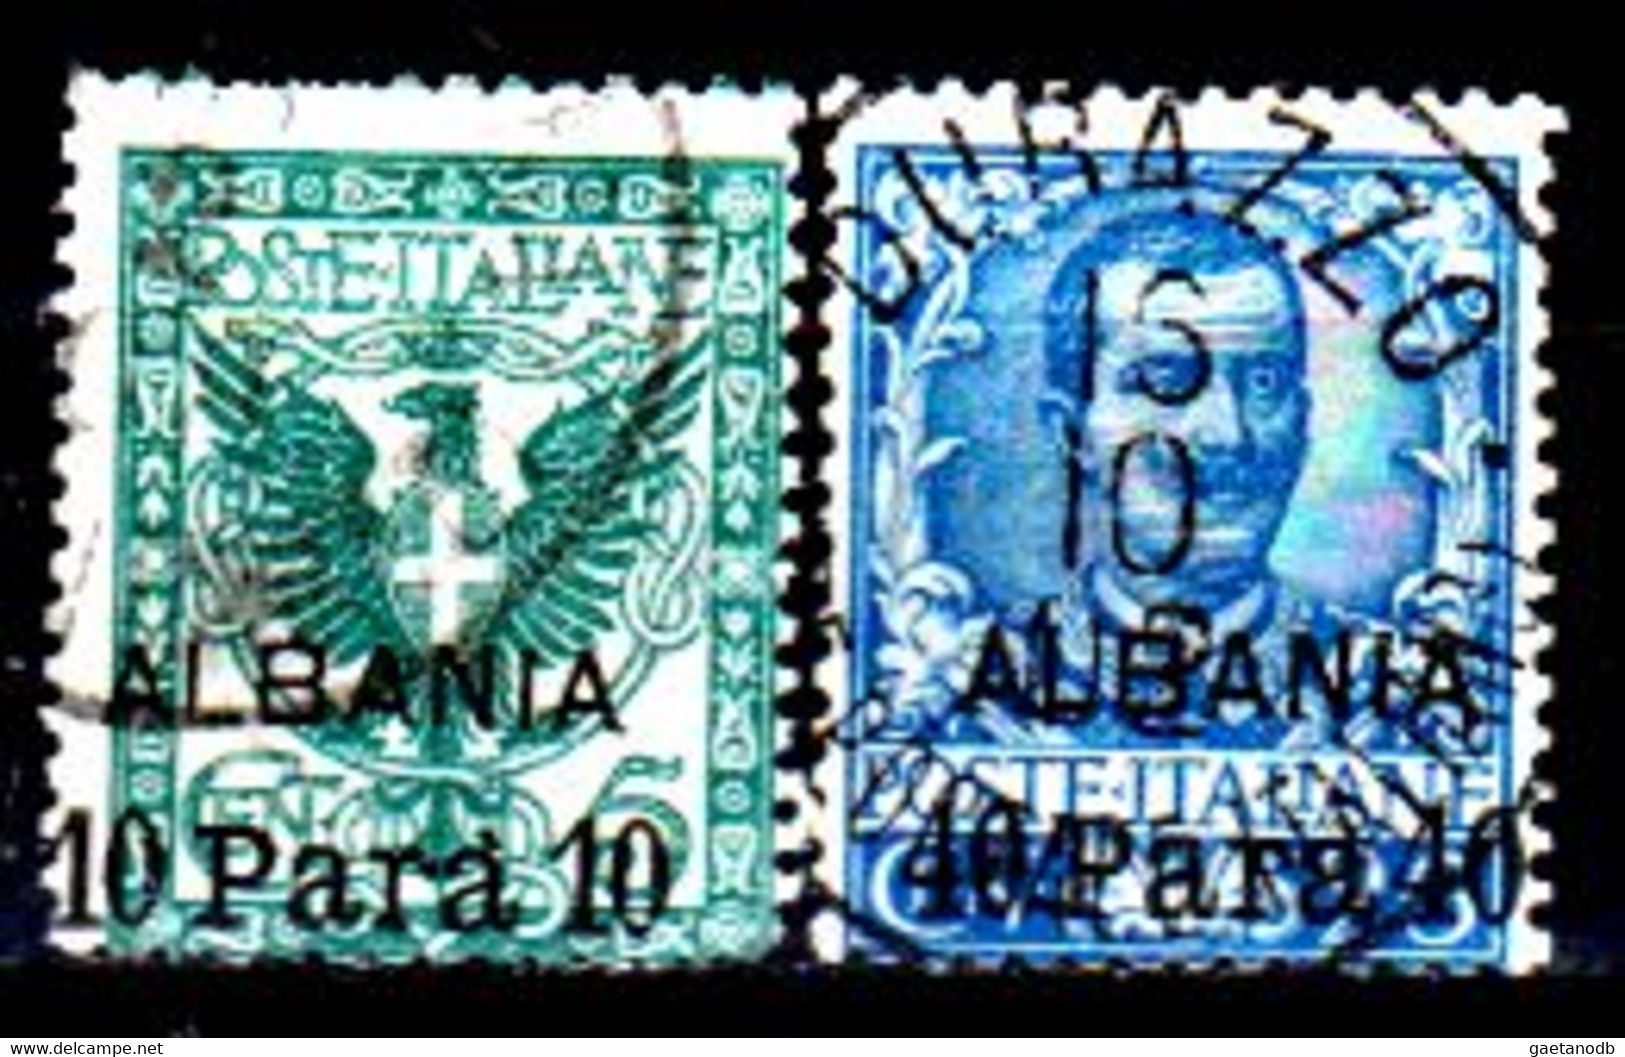 Italia-G-1027 - Albania 1902: Sassone, N. 1, 3 (o) Used - Qualità A Vostro Giudizio. - Albanie